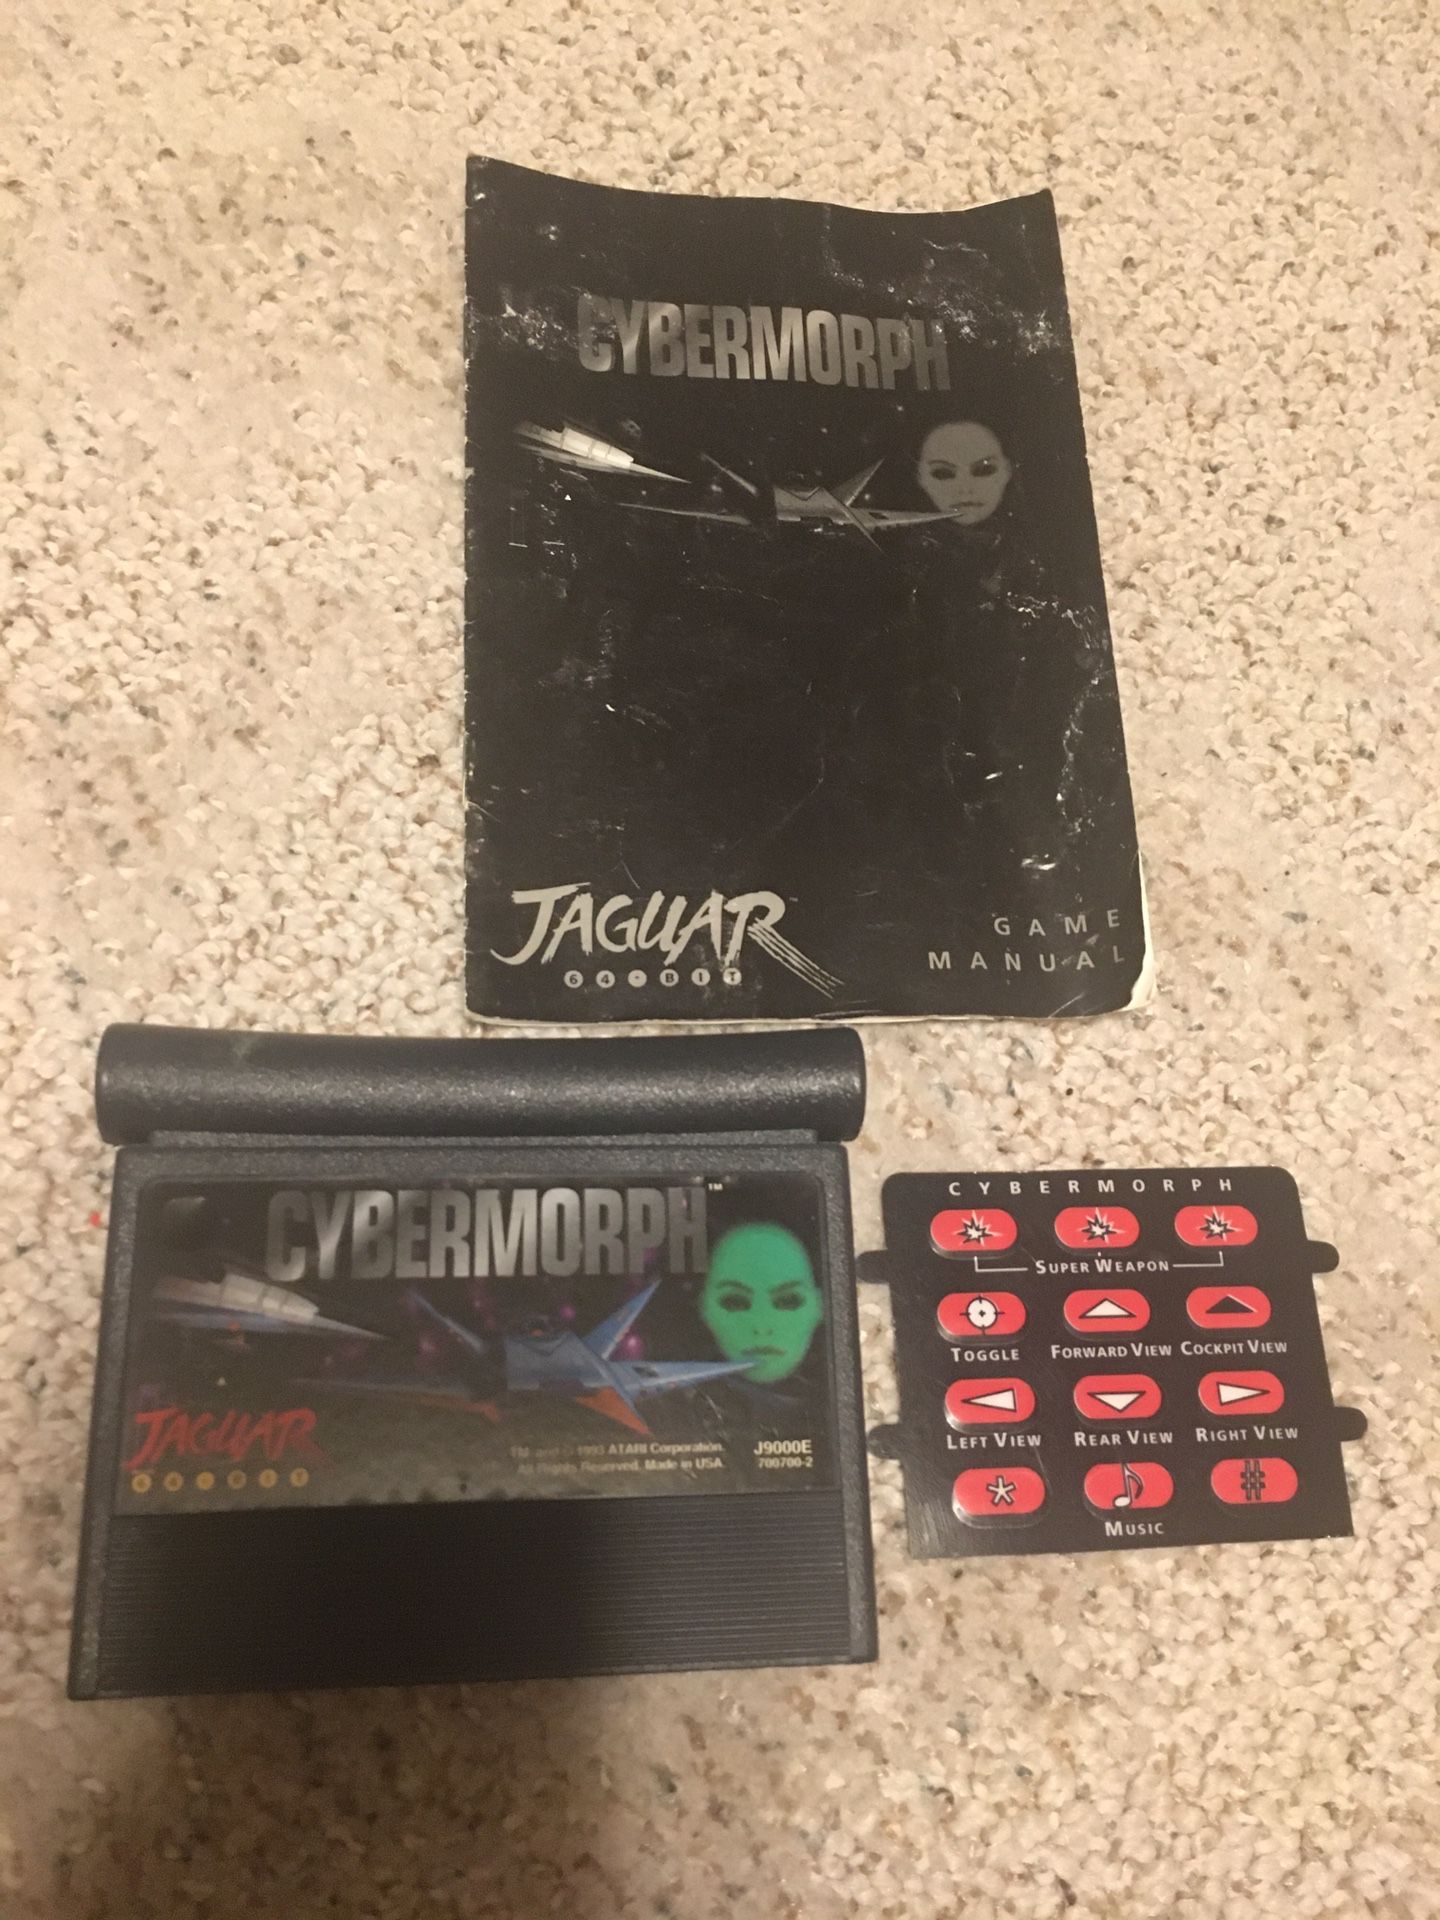 Cybermorph For Atari Jaguar 